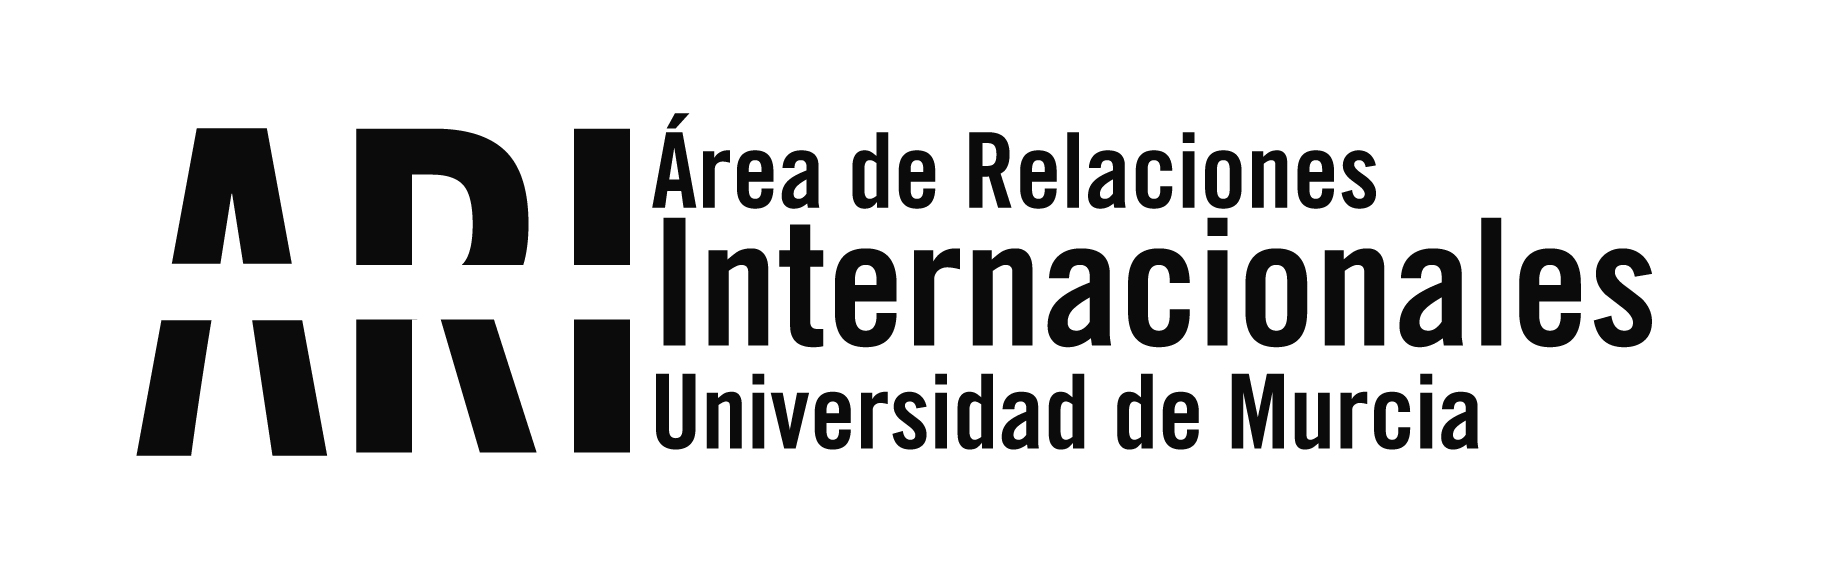 Bienvenida Internacional 2011-2012 - Área de Relaciones Internacionales